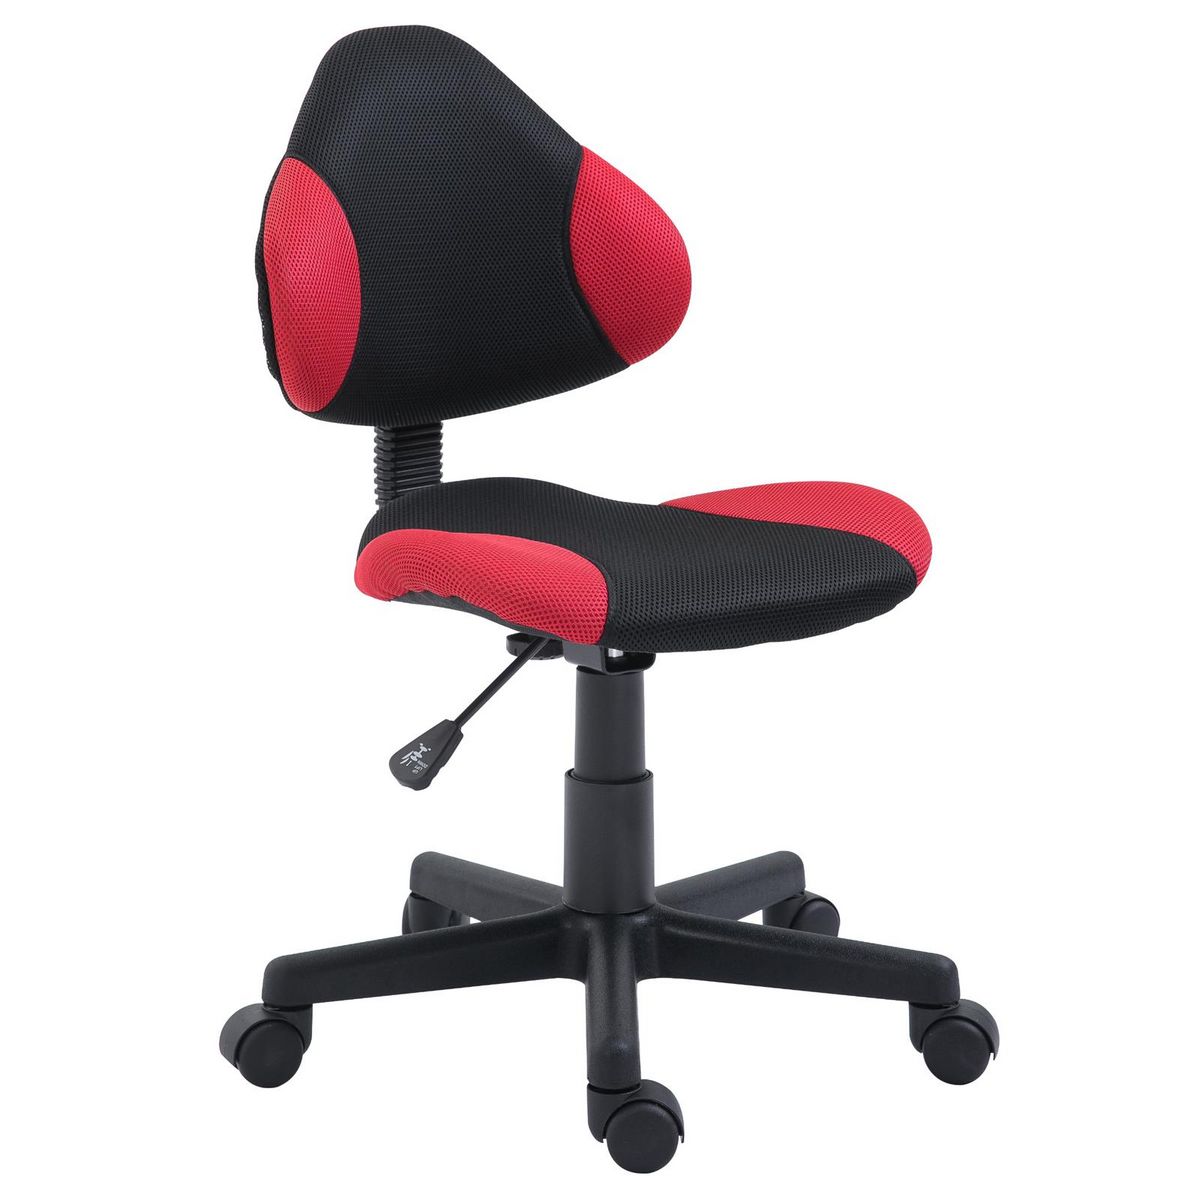 IDIMEX Chaise de bureau pour enfant ALONDRA fauteuil pivotant avec hauteur réglable, revêtement en mesh noir/rouge